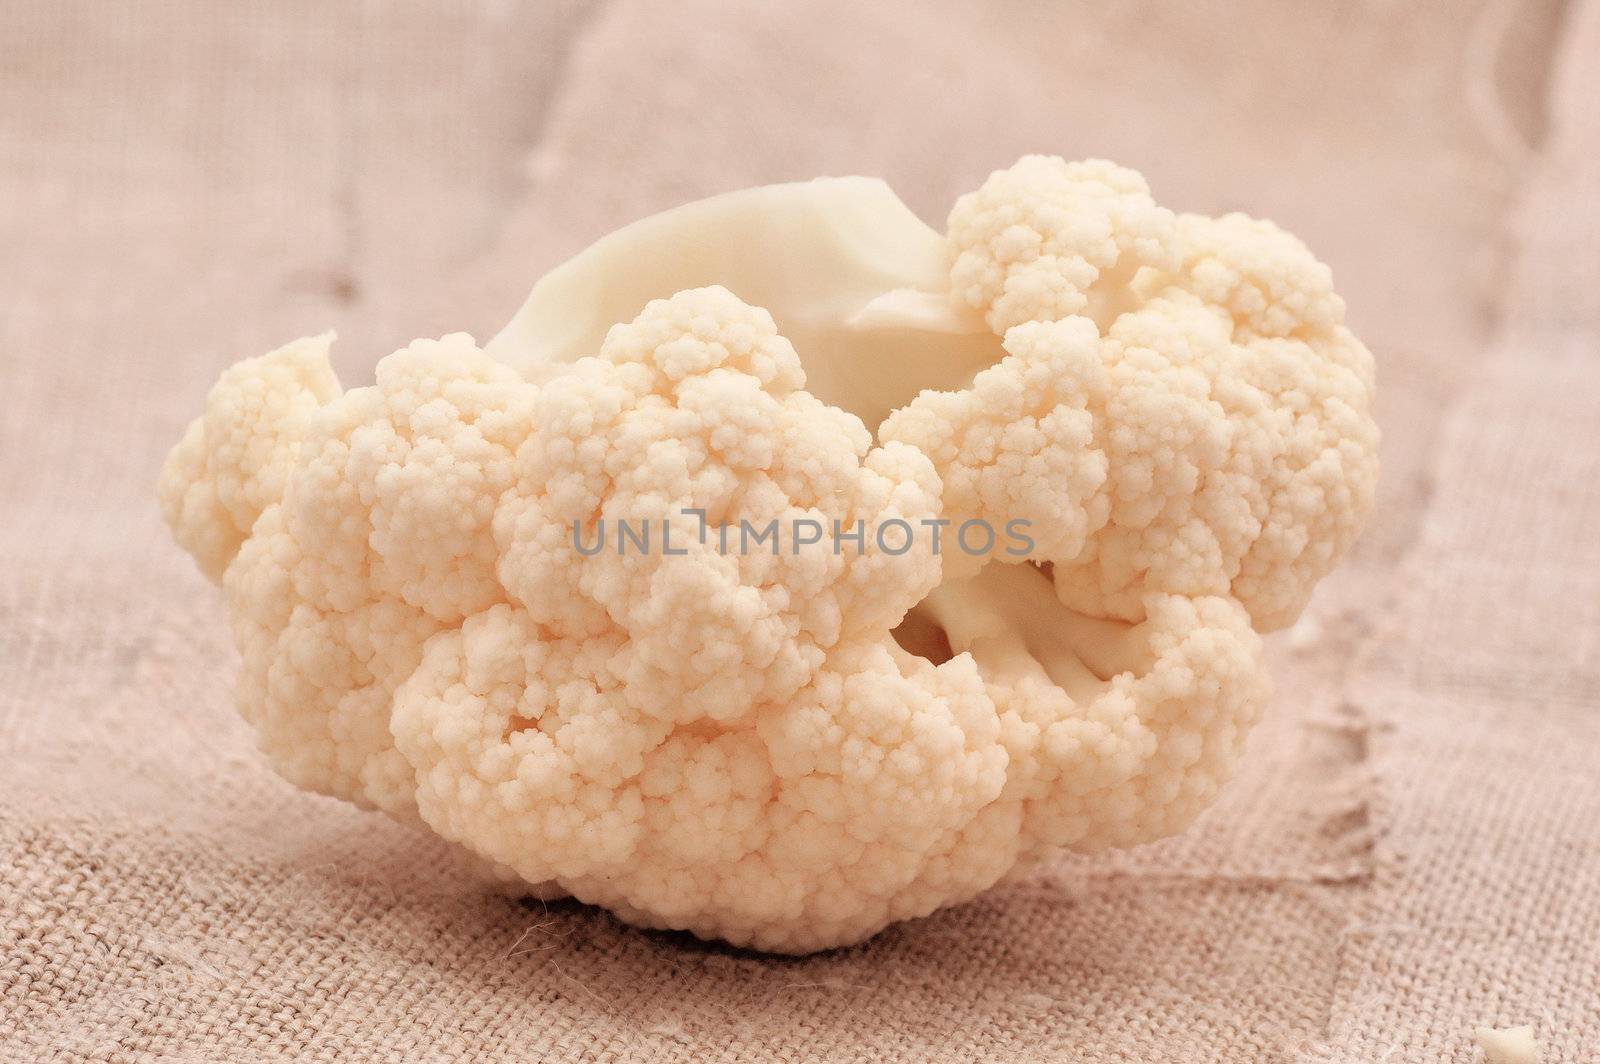 cauliflower by pmaks